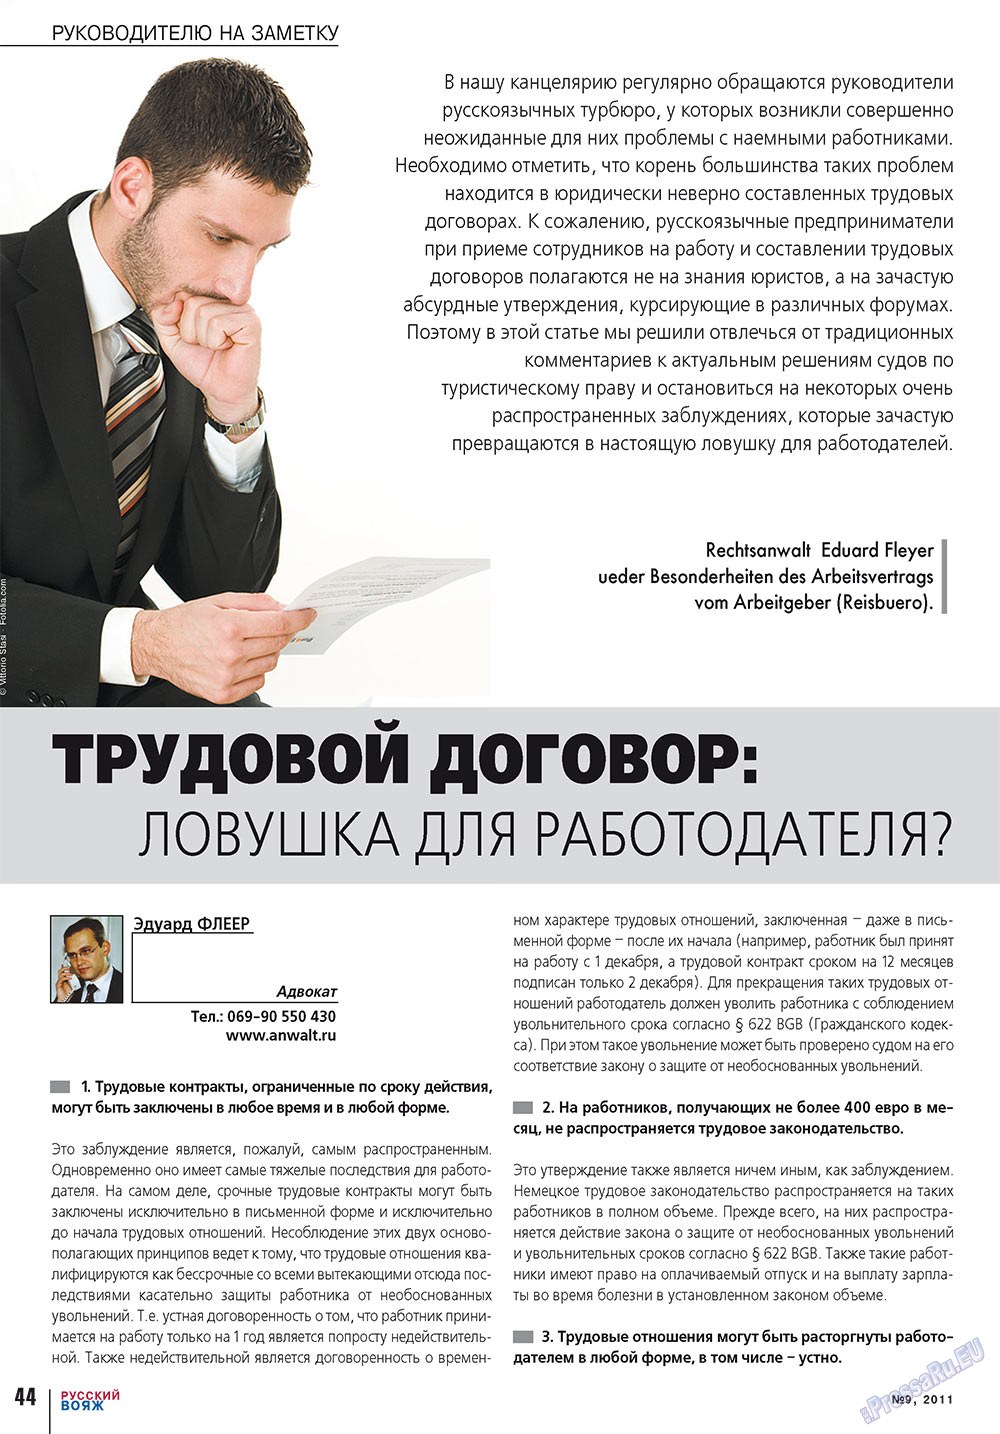 Русский вояж, журнал. 2011 №9 стр.44